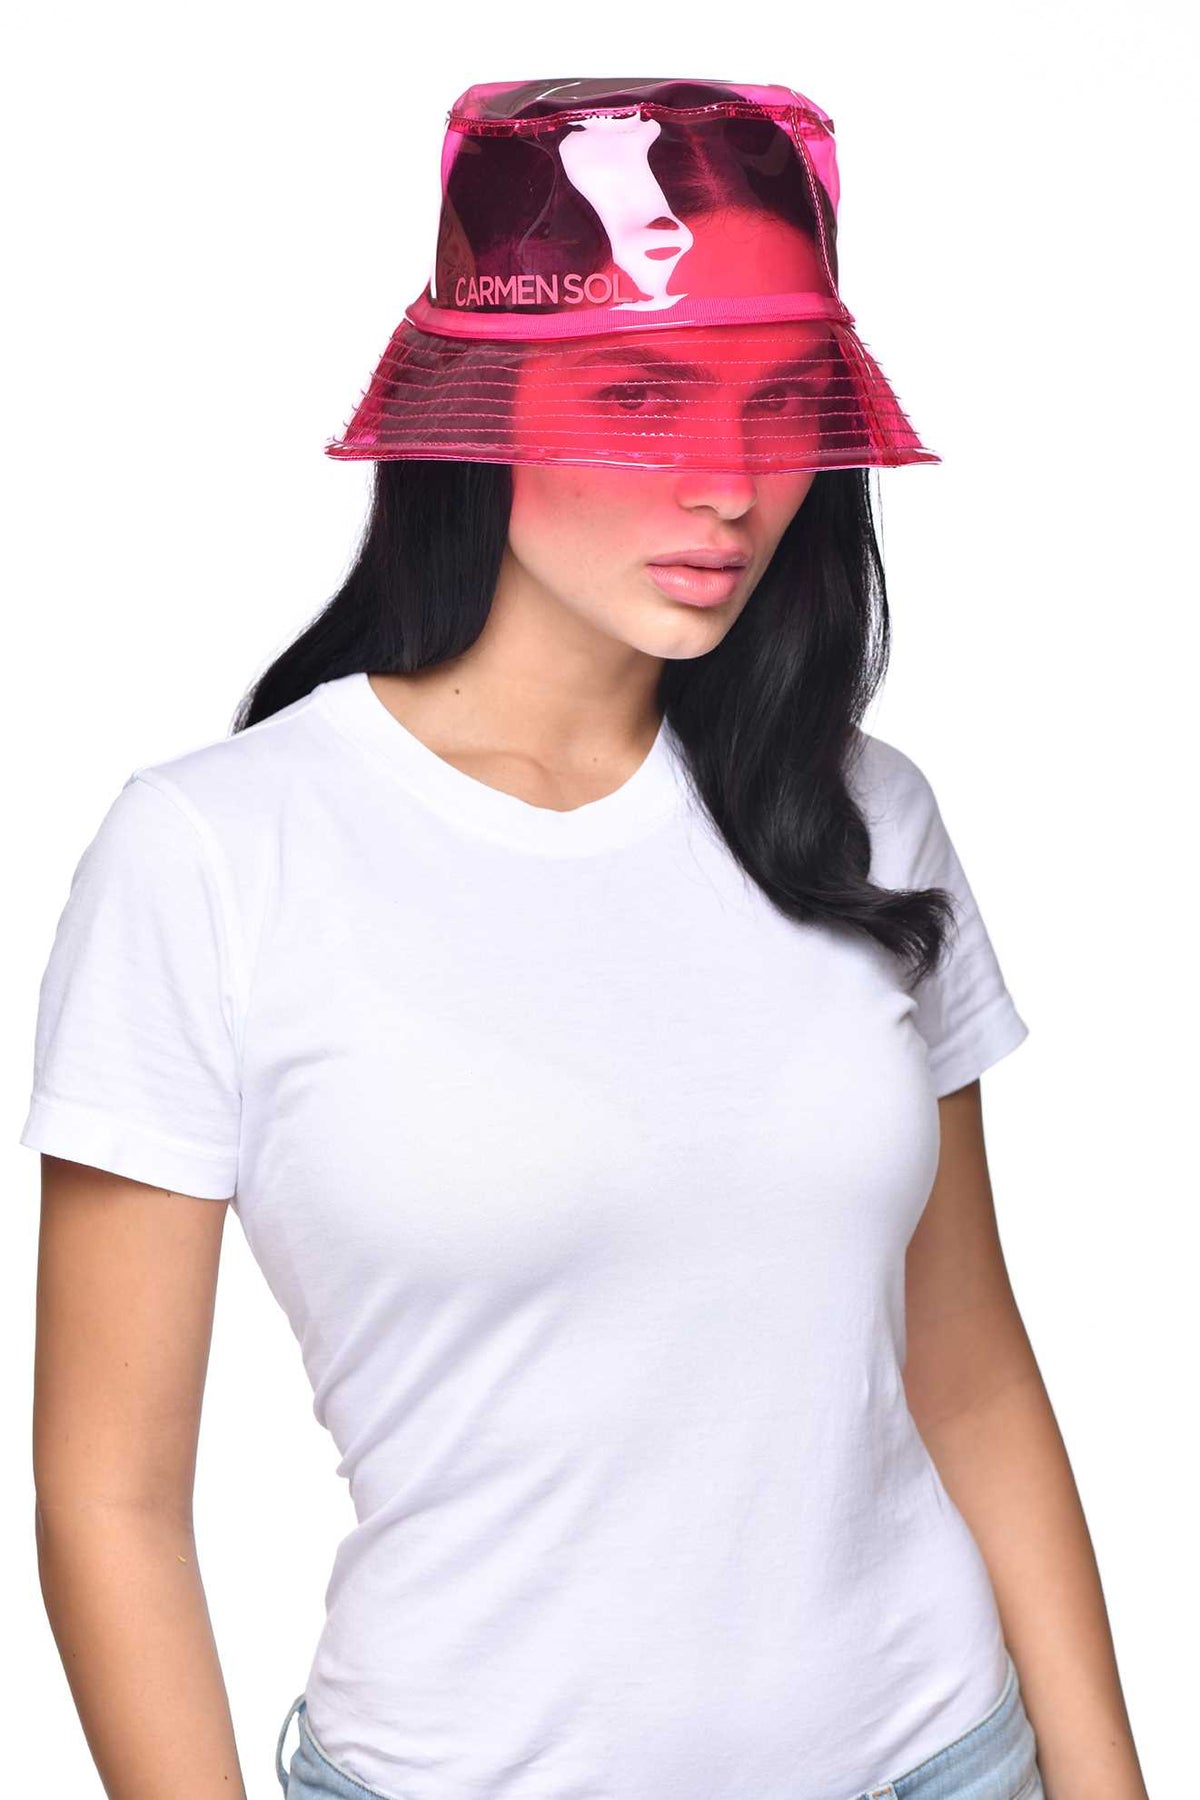 Women wearing Carmen Sol Bucket hat in color fuchsia